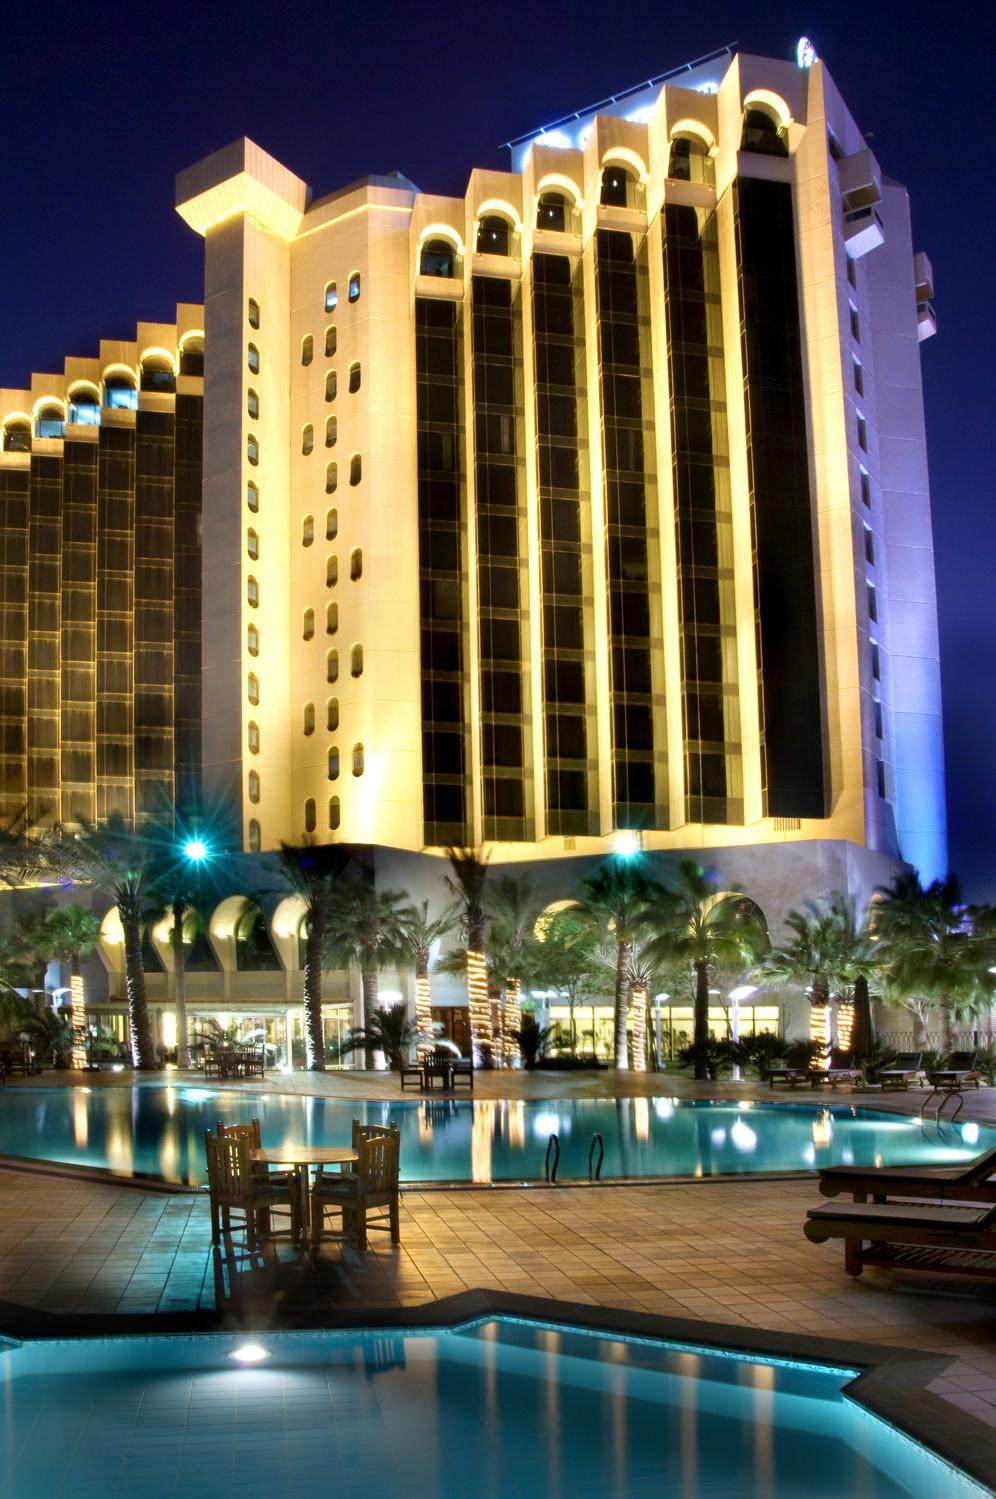 沙特阿拉伯－达曼喜来登大酒店 Sheraton Dammam Hotel & Towers_92093_large.jpg